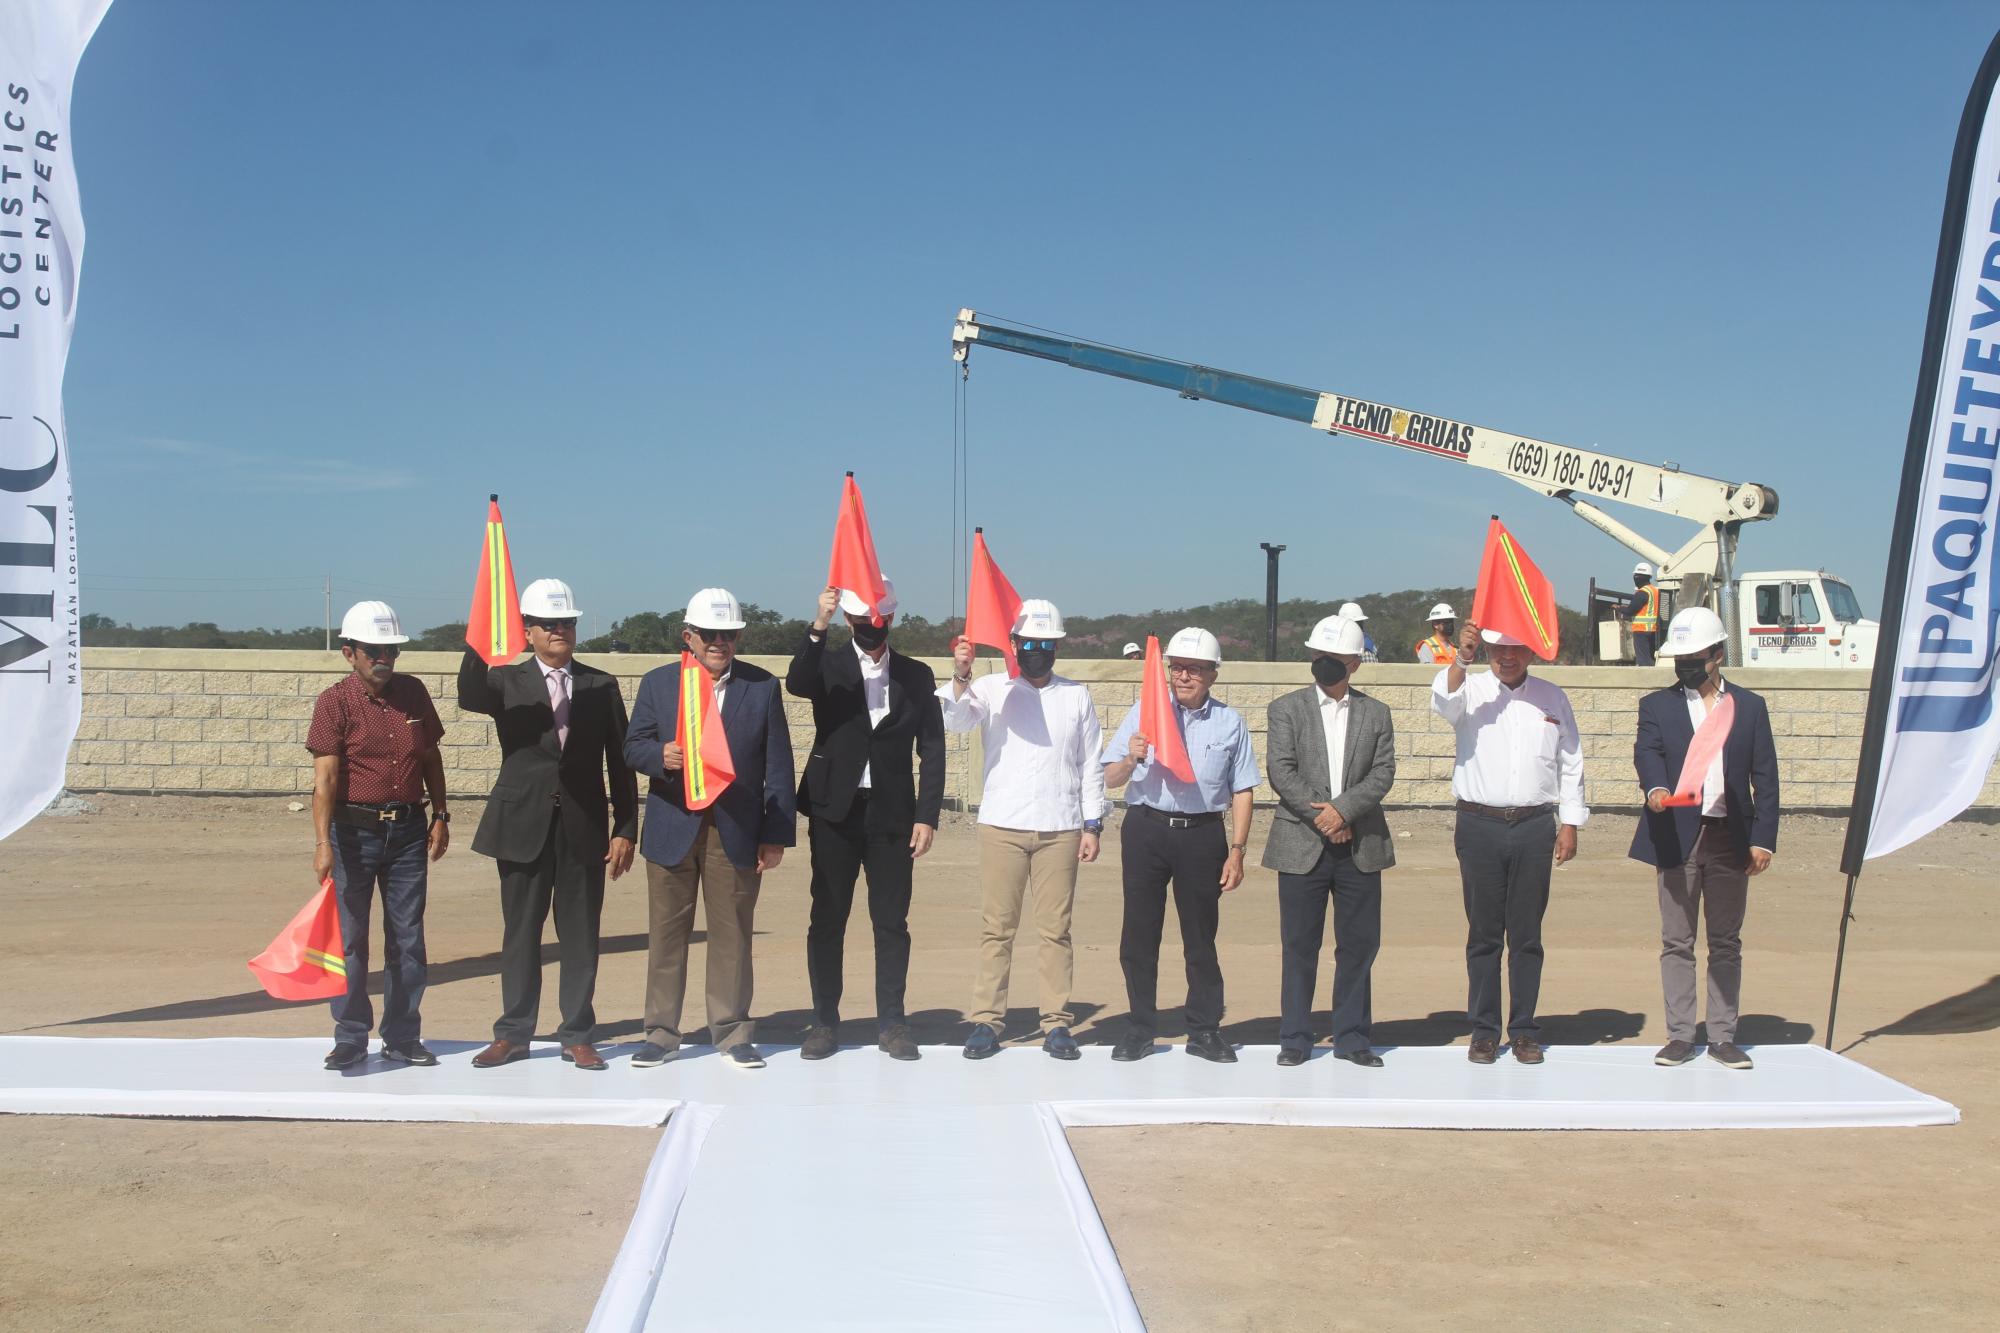 $!Directivos del proyecto, en compañía de invitados especiales, dieron el banderazo de inicio del Mazatlan Logistics Center.